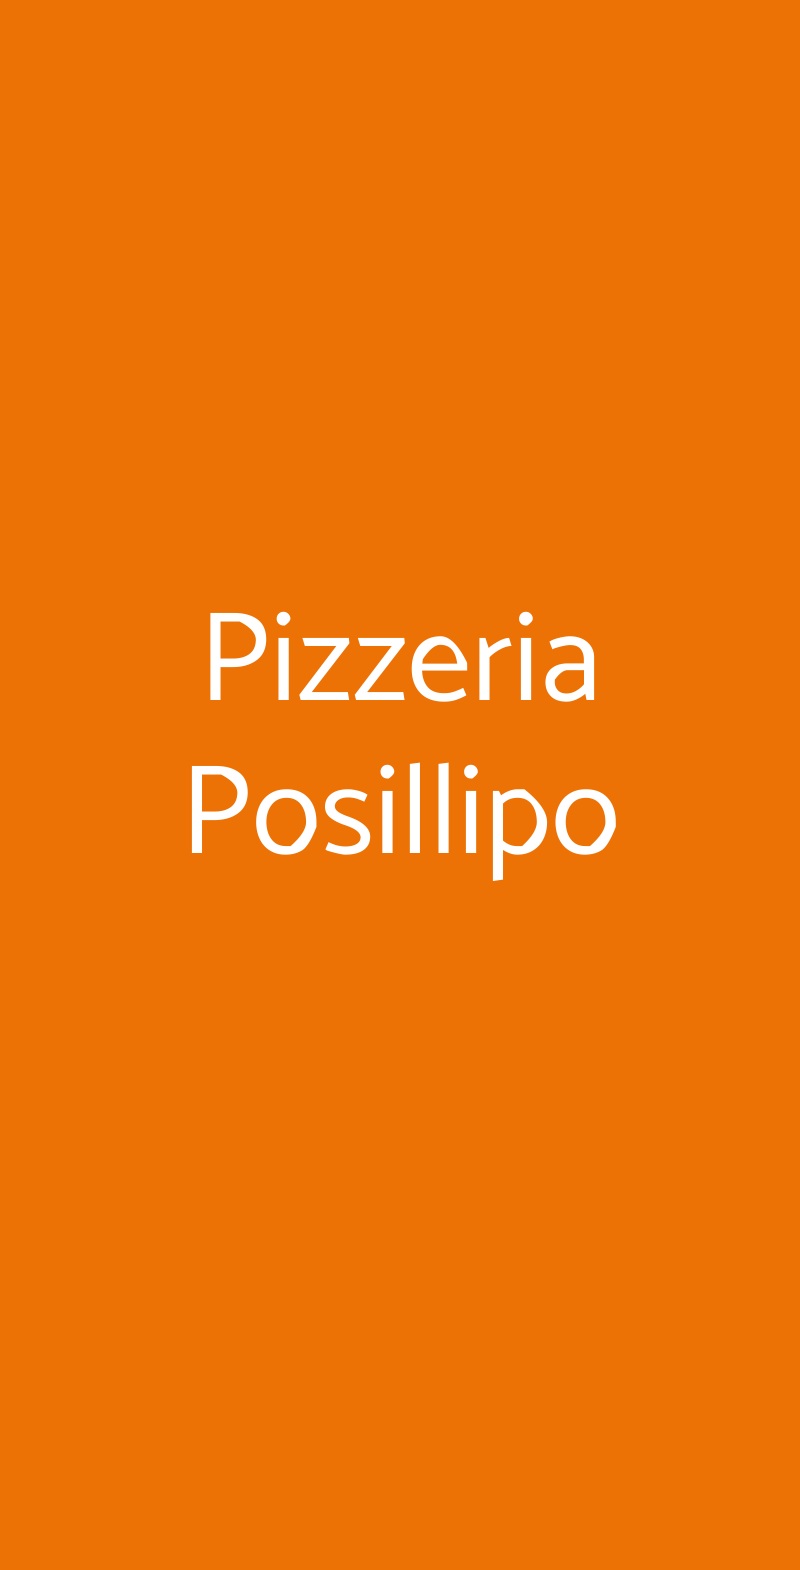 Pizzeria Posillipo Napoli menù 1 pagina